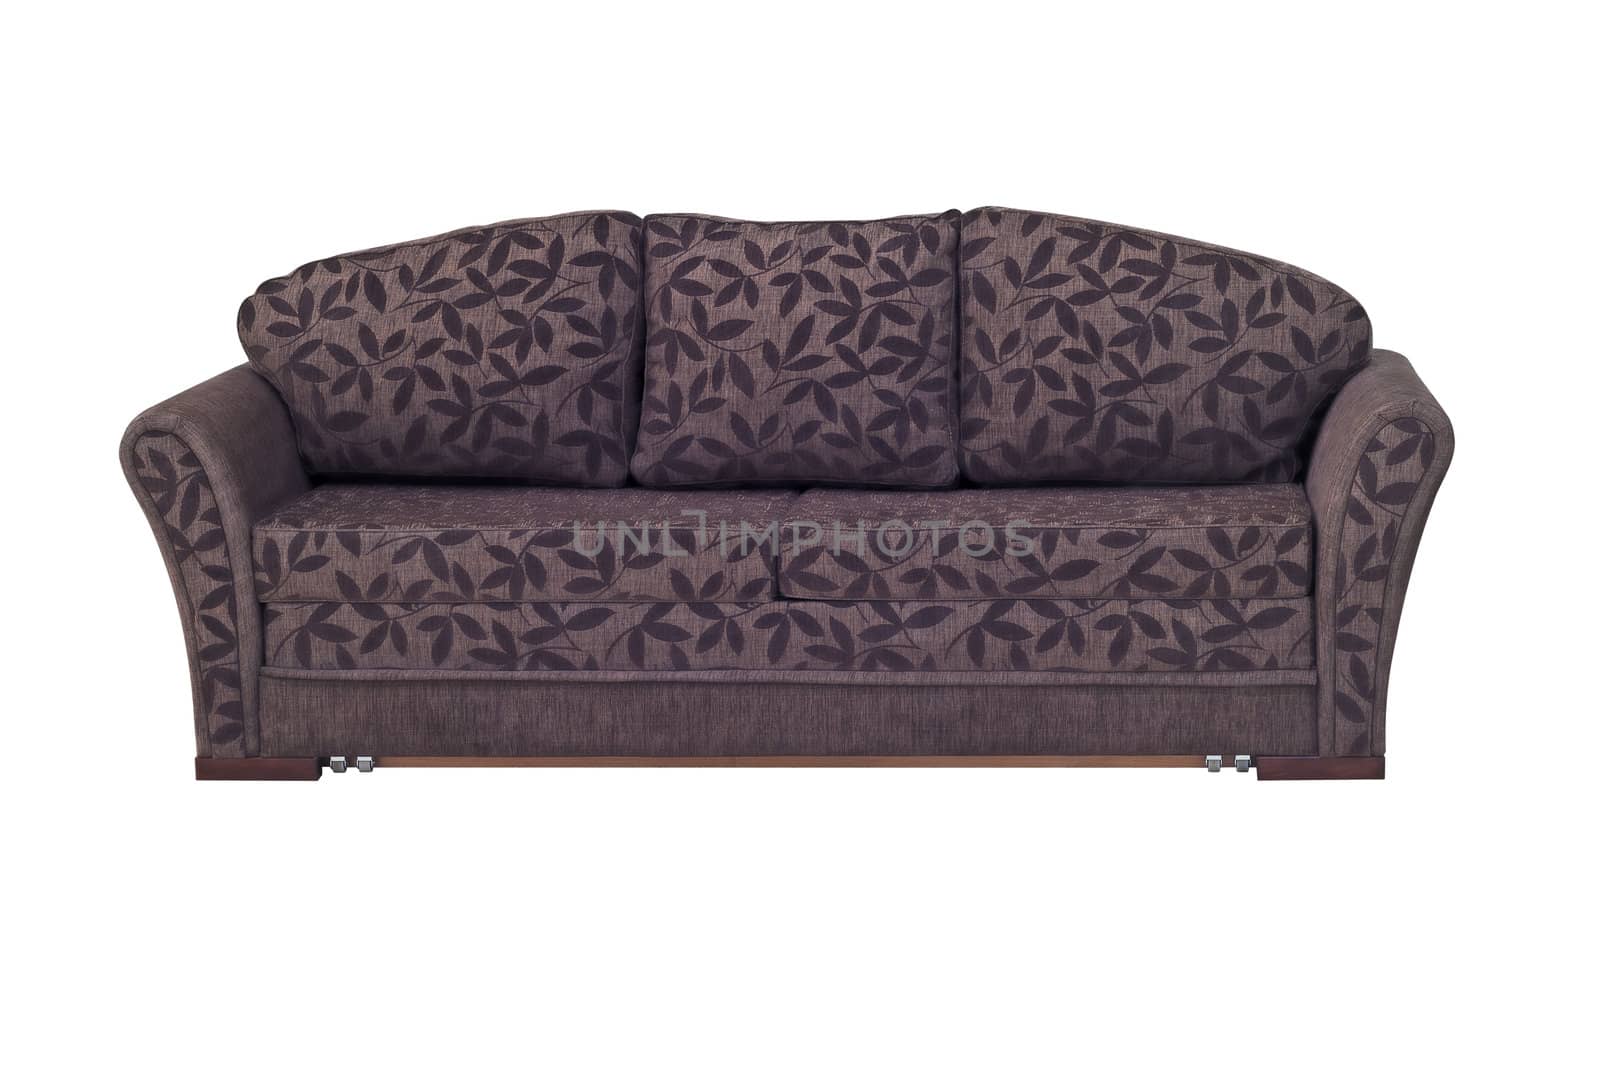 Sofa by Dan70